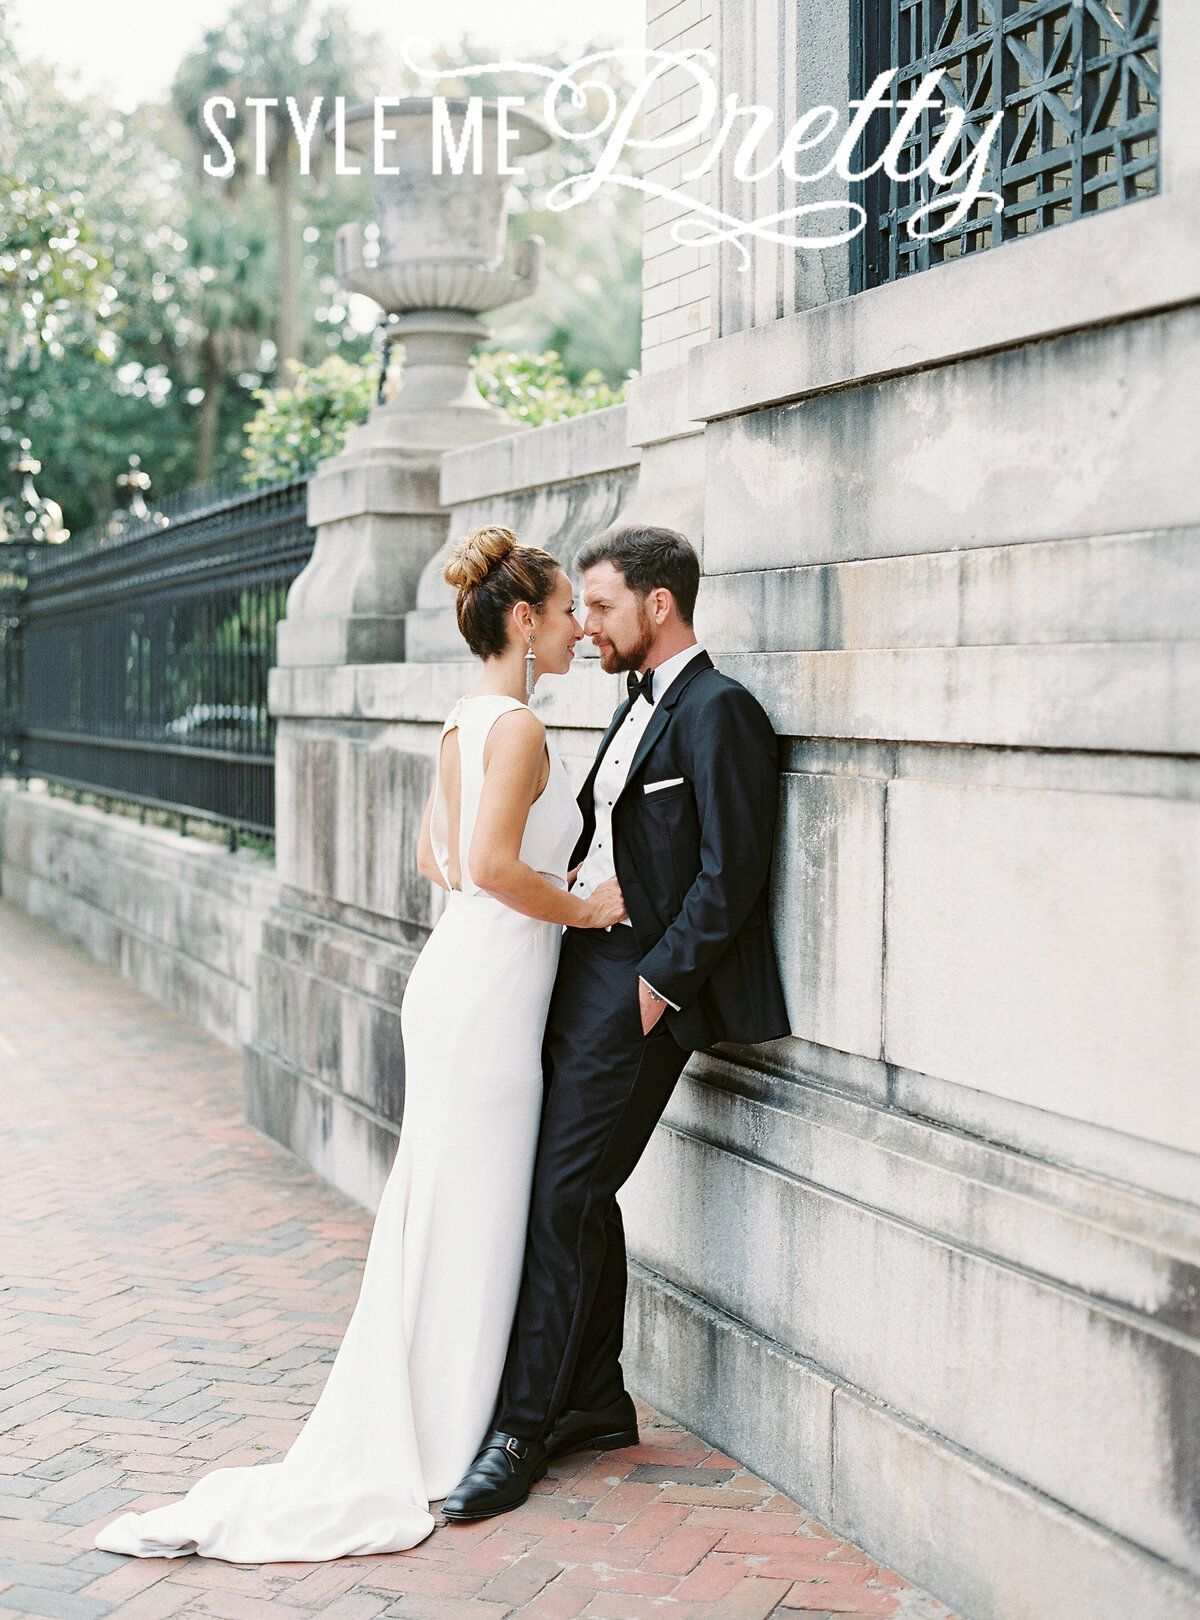 Heather_Beerman_Martha_Stewart_Brides_Harpers_Bazaar_Wedding_Photographer_14